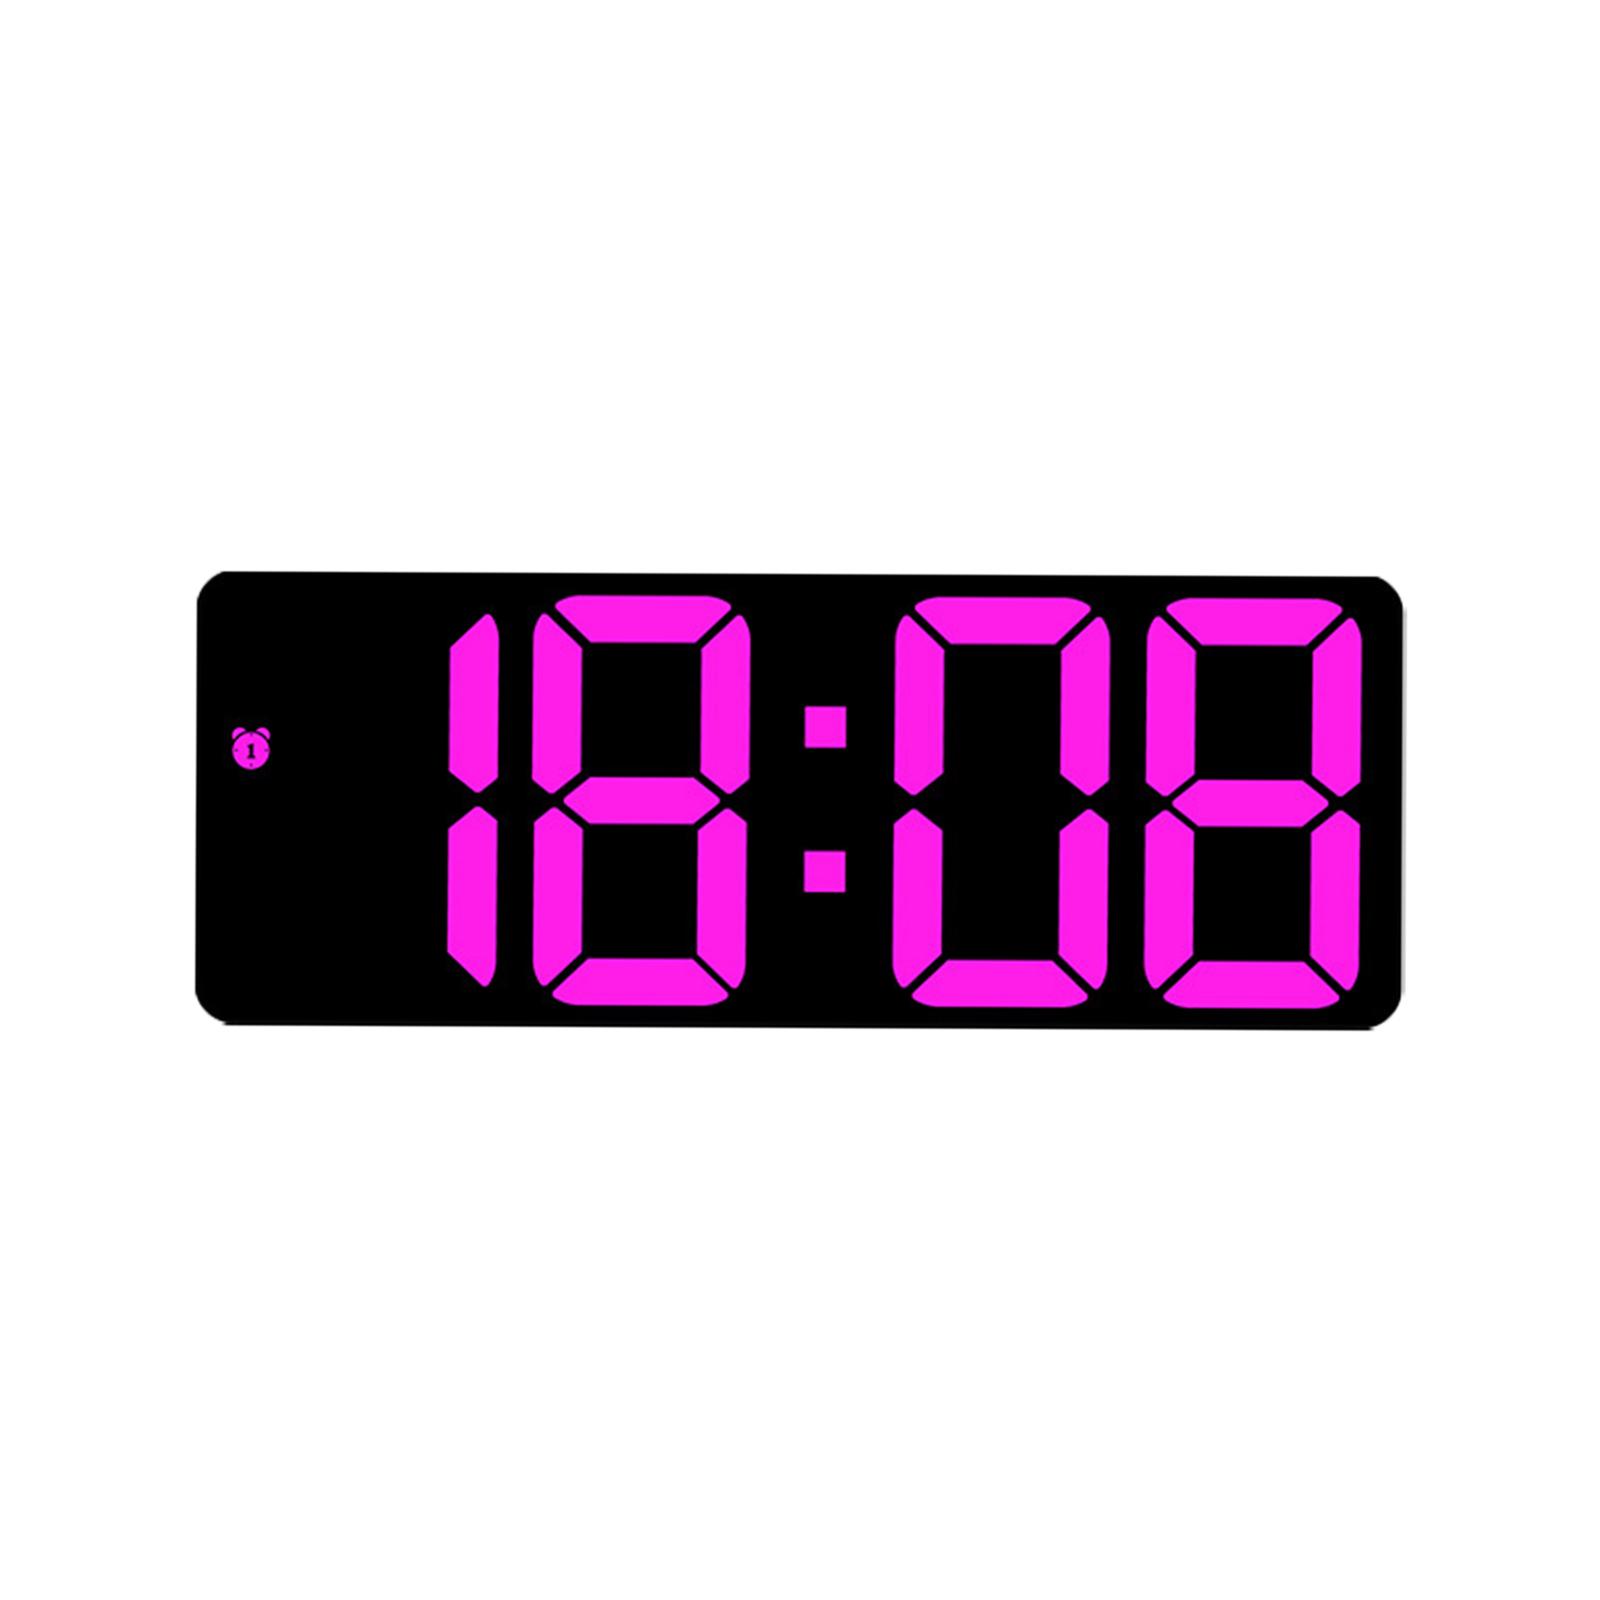 Digital Wall Clock Desk LED Desktop Alarm Clock for Living Room Adult Office Rose Red